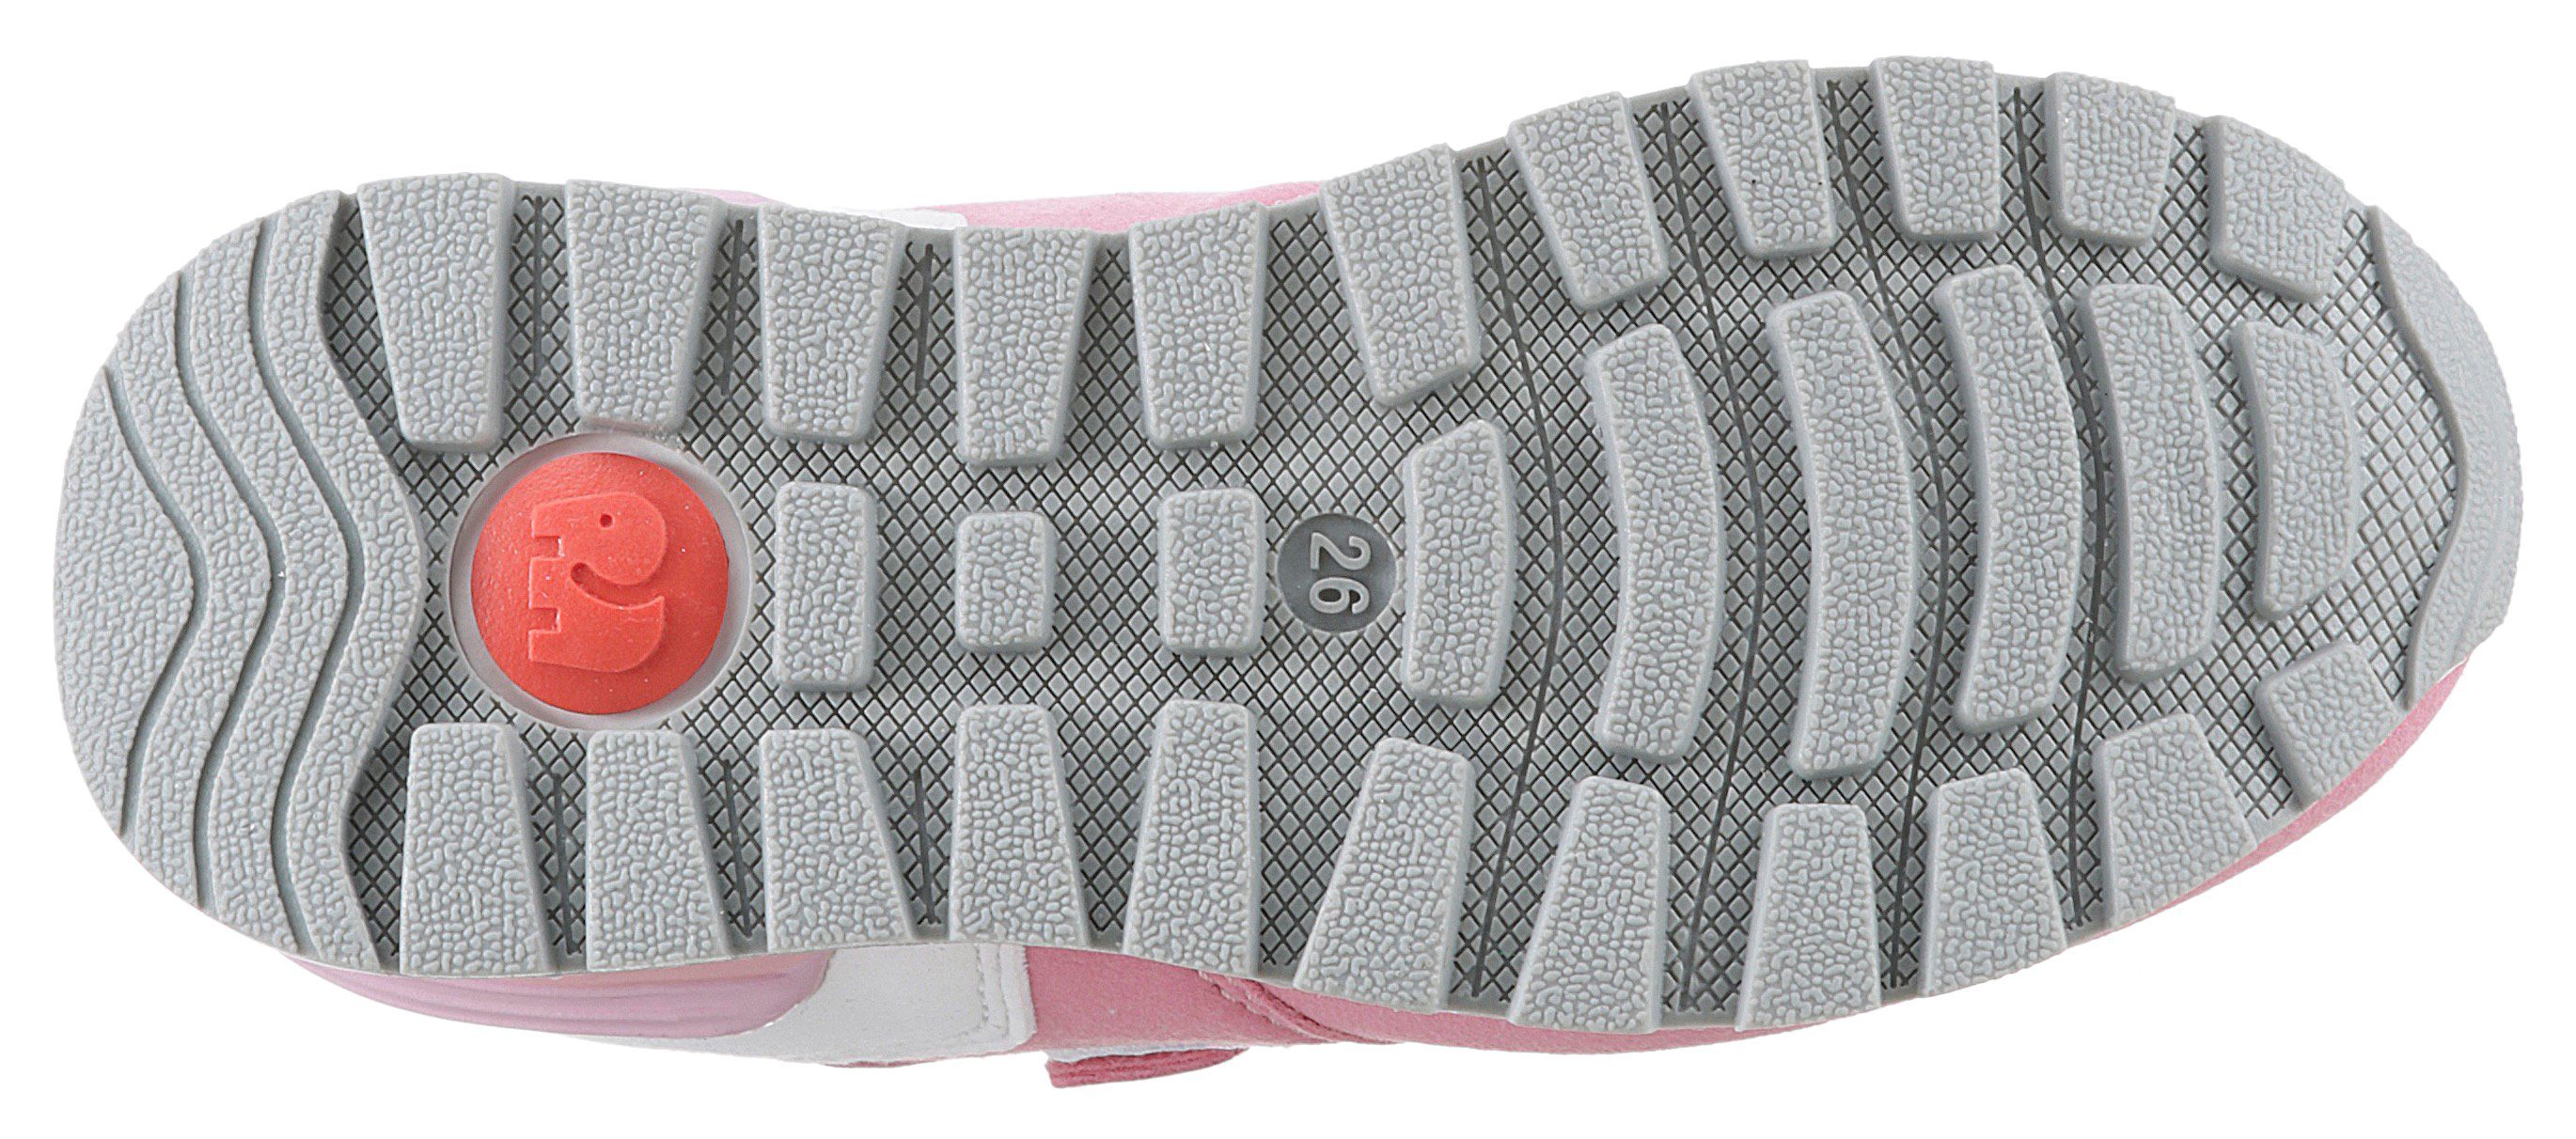 Foam Sneaker ELEFANTEN Memory Hoppy weichem pink-flieder mit WMS: Weit